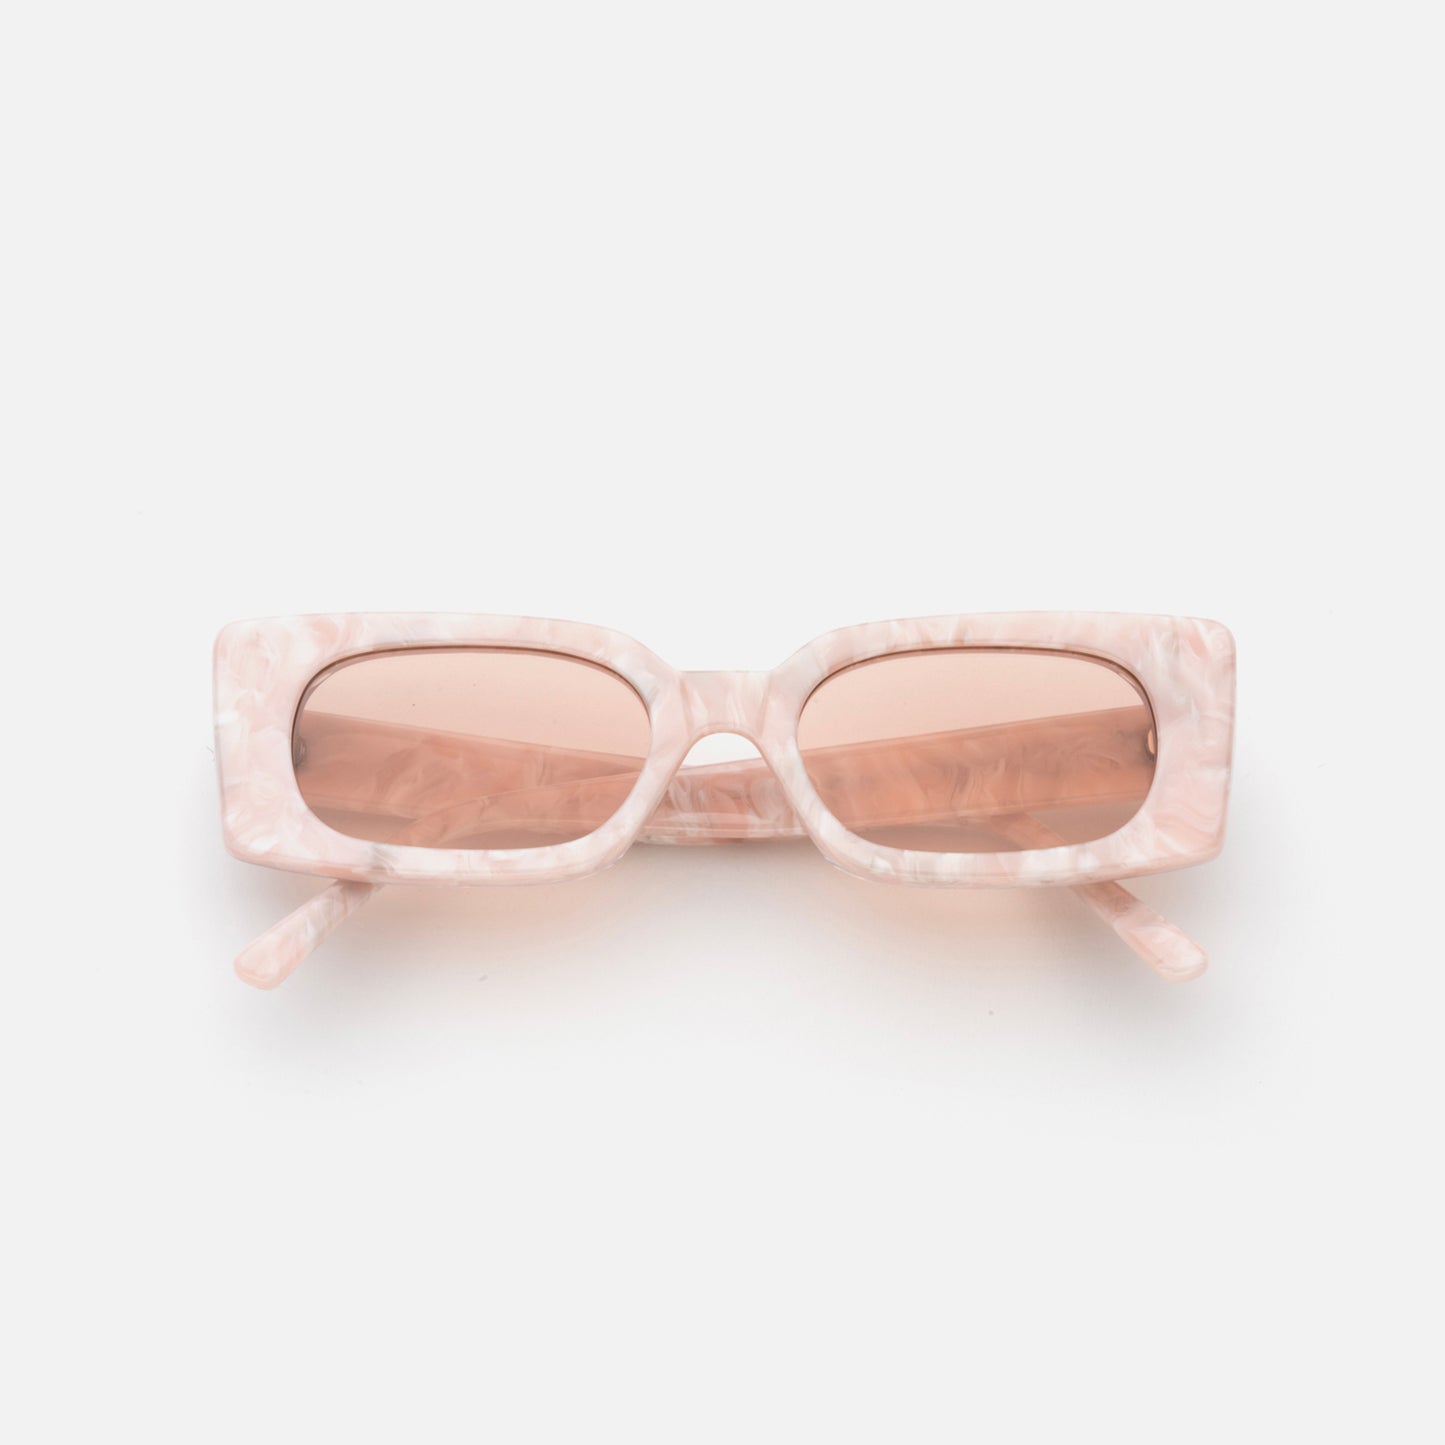 Lu Goldie - Salomé Sunglasses - Cotton Candy